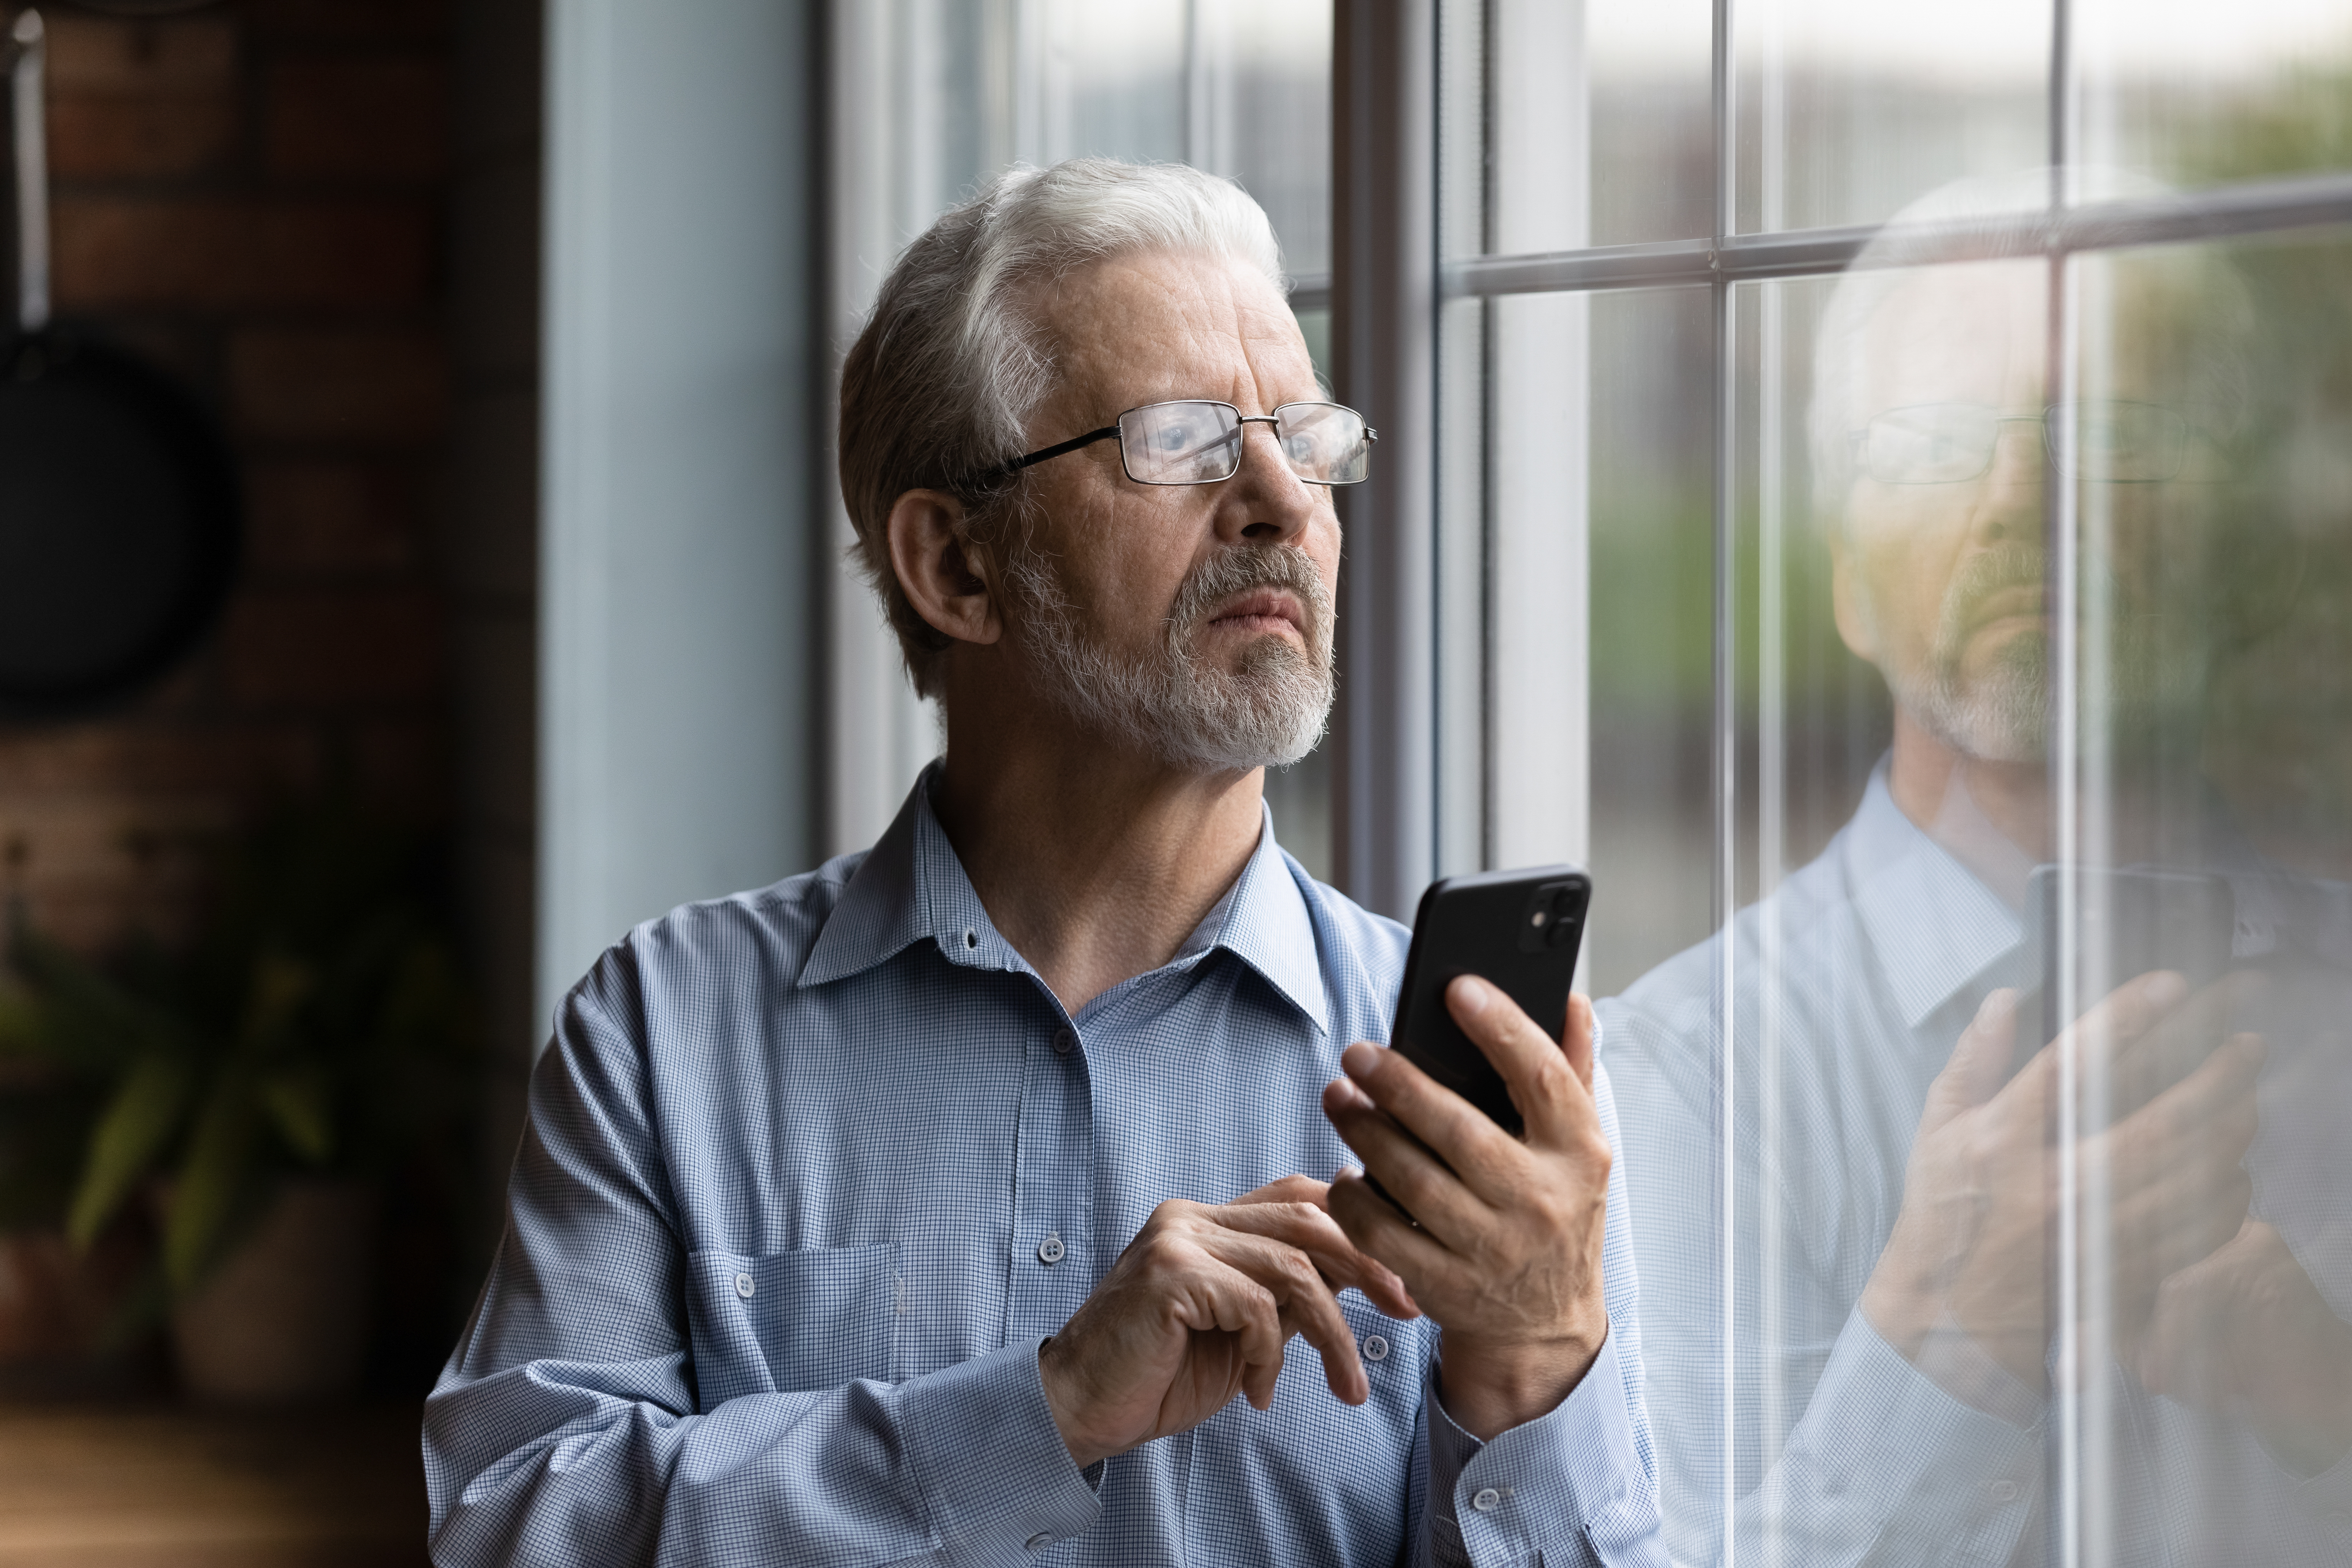 Un homme regardant par la fenêtre, un téléphone à la main | Source : Shutterstock